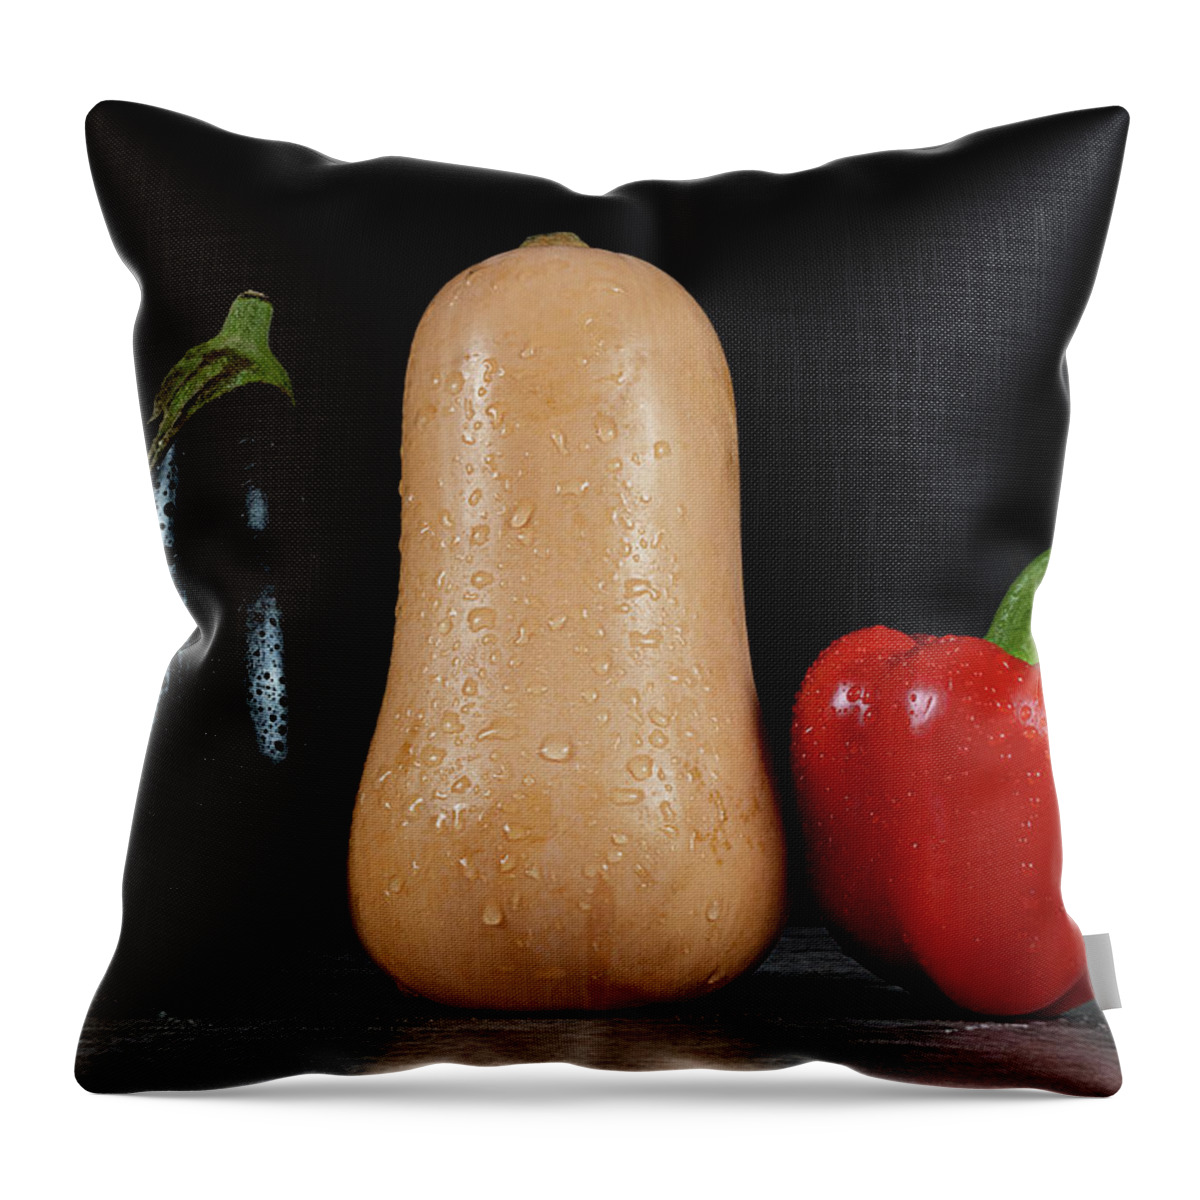 Bell Pepper Throw Pillow featuring the photograph Aubergine, Pumpkin and Bell Pepper by Bernhard Schaffer